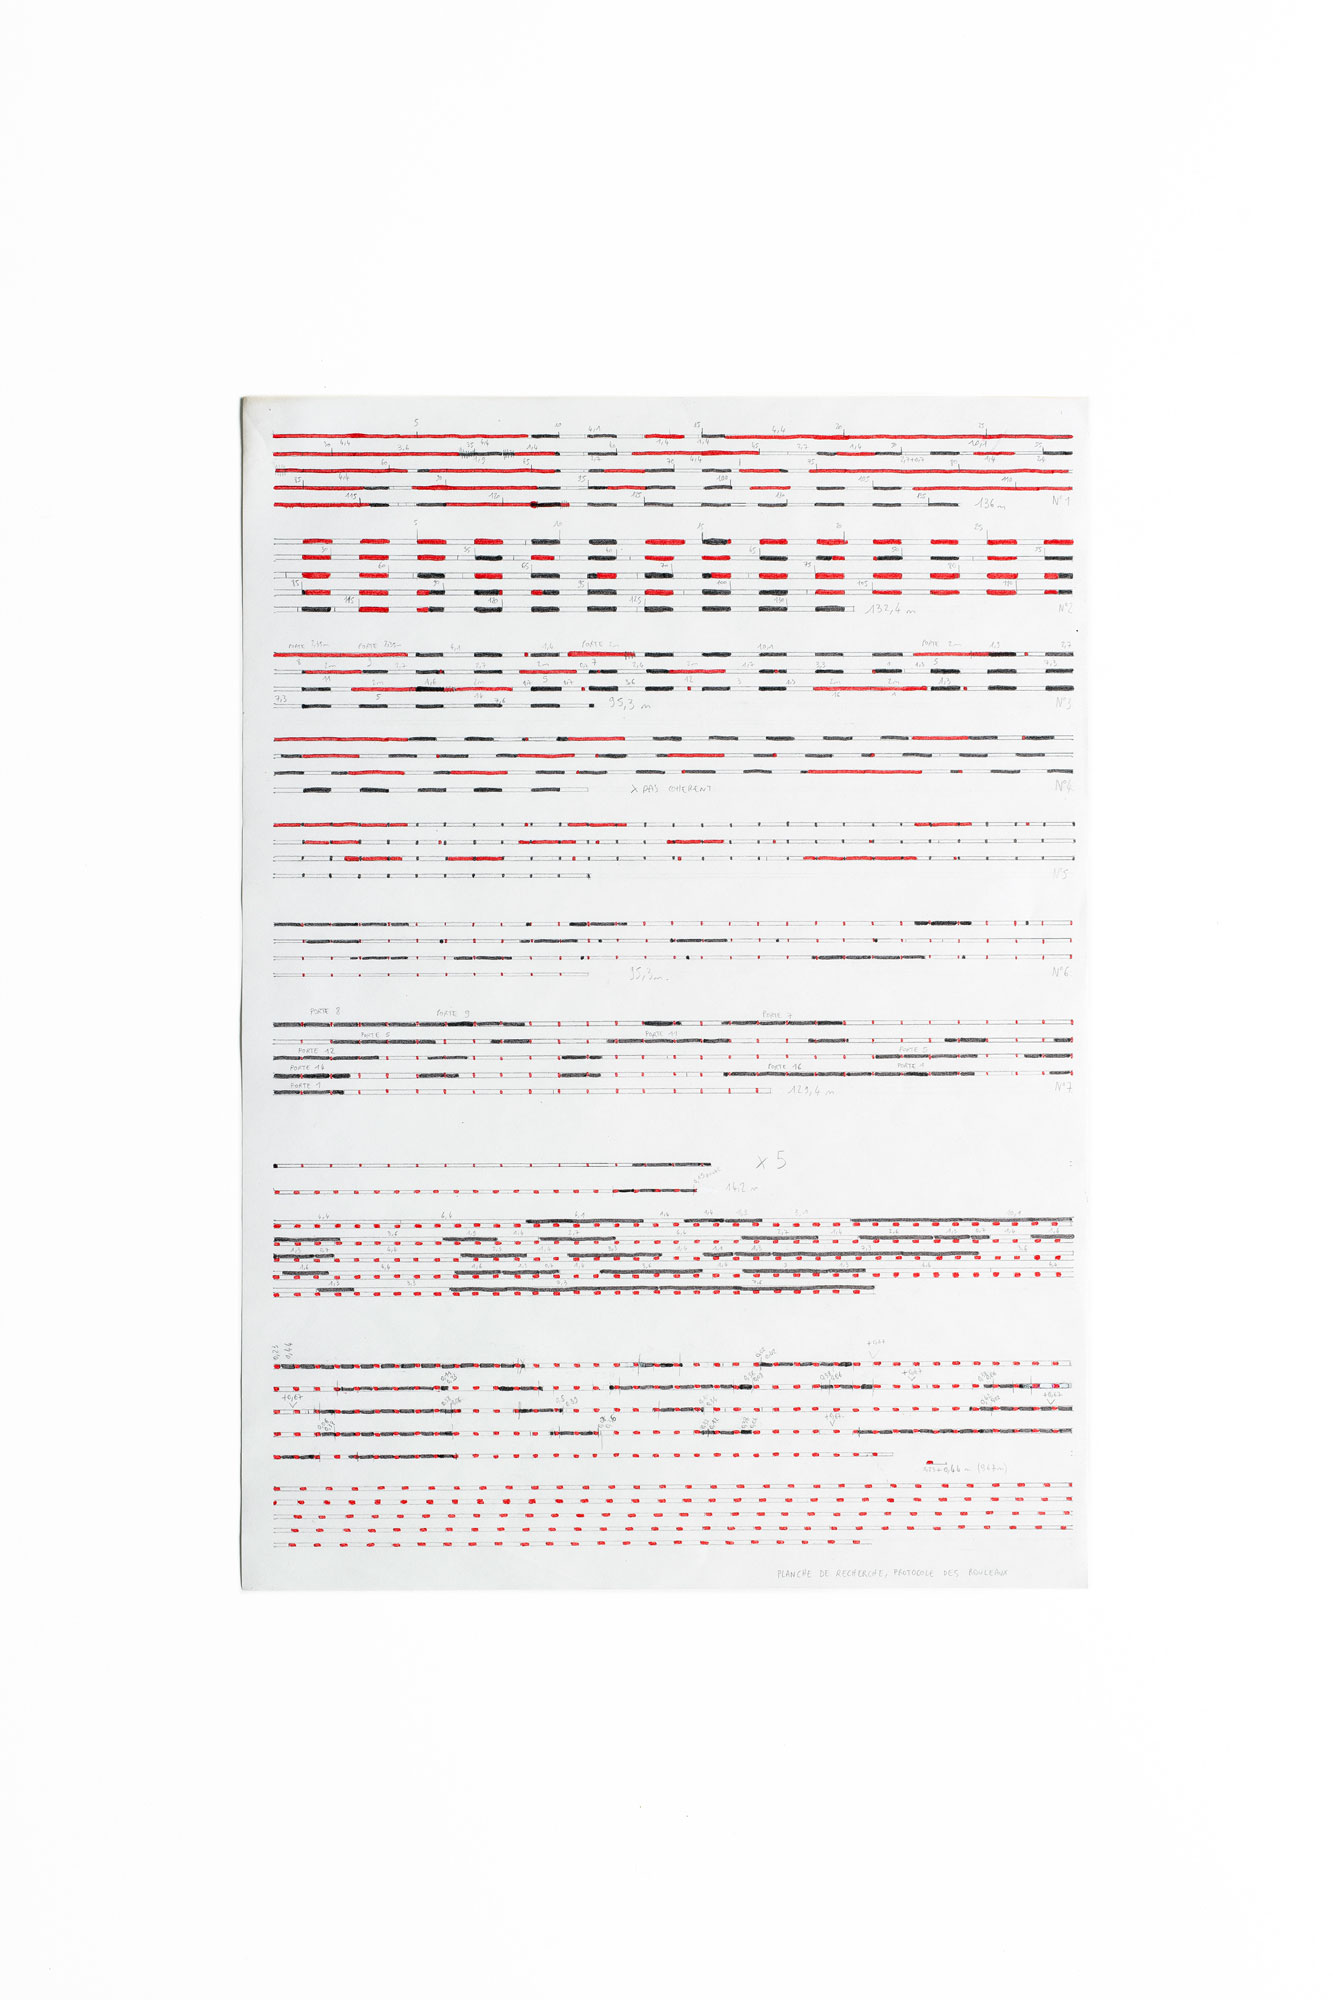 Protocoles pour rubans gradués, 2021 - Crayon et feutre sur papier - 42 x 29,6 cm - Photo : Johan Poezevara